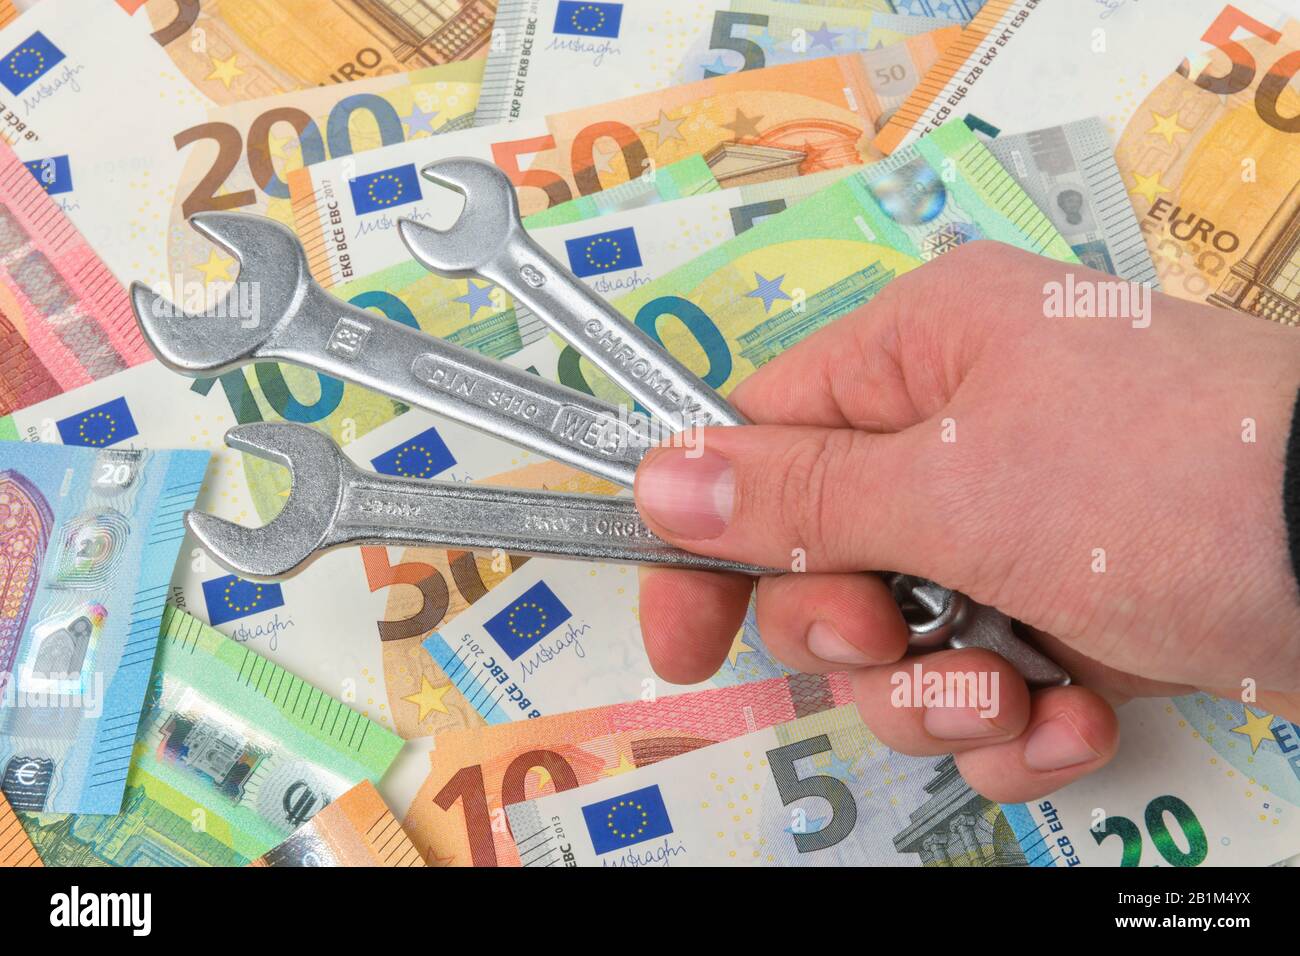 Schraubenschlüssel, Geld, Euroscheine, Symbolfoto Handwerkerkosten, Studioaufnahme Stock Photo